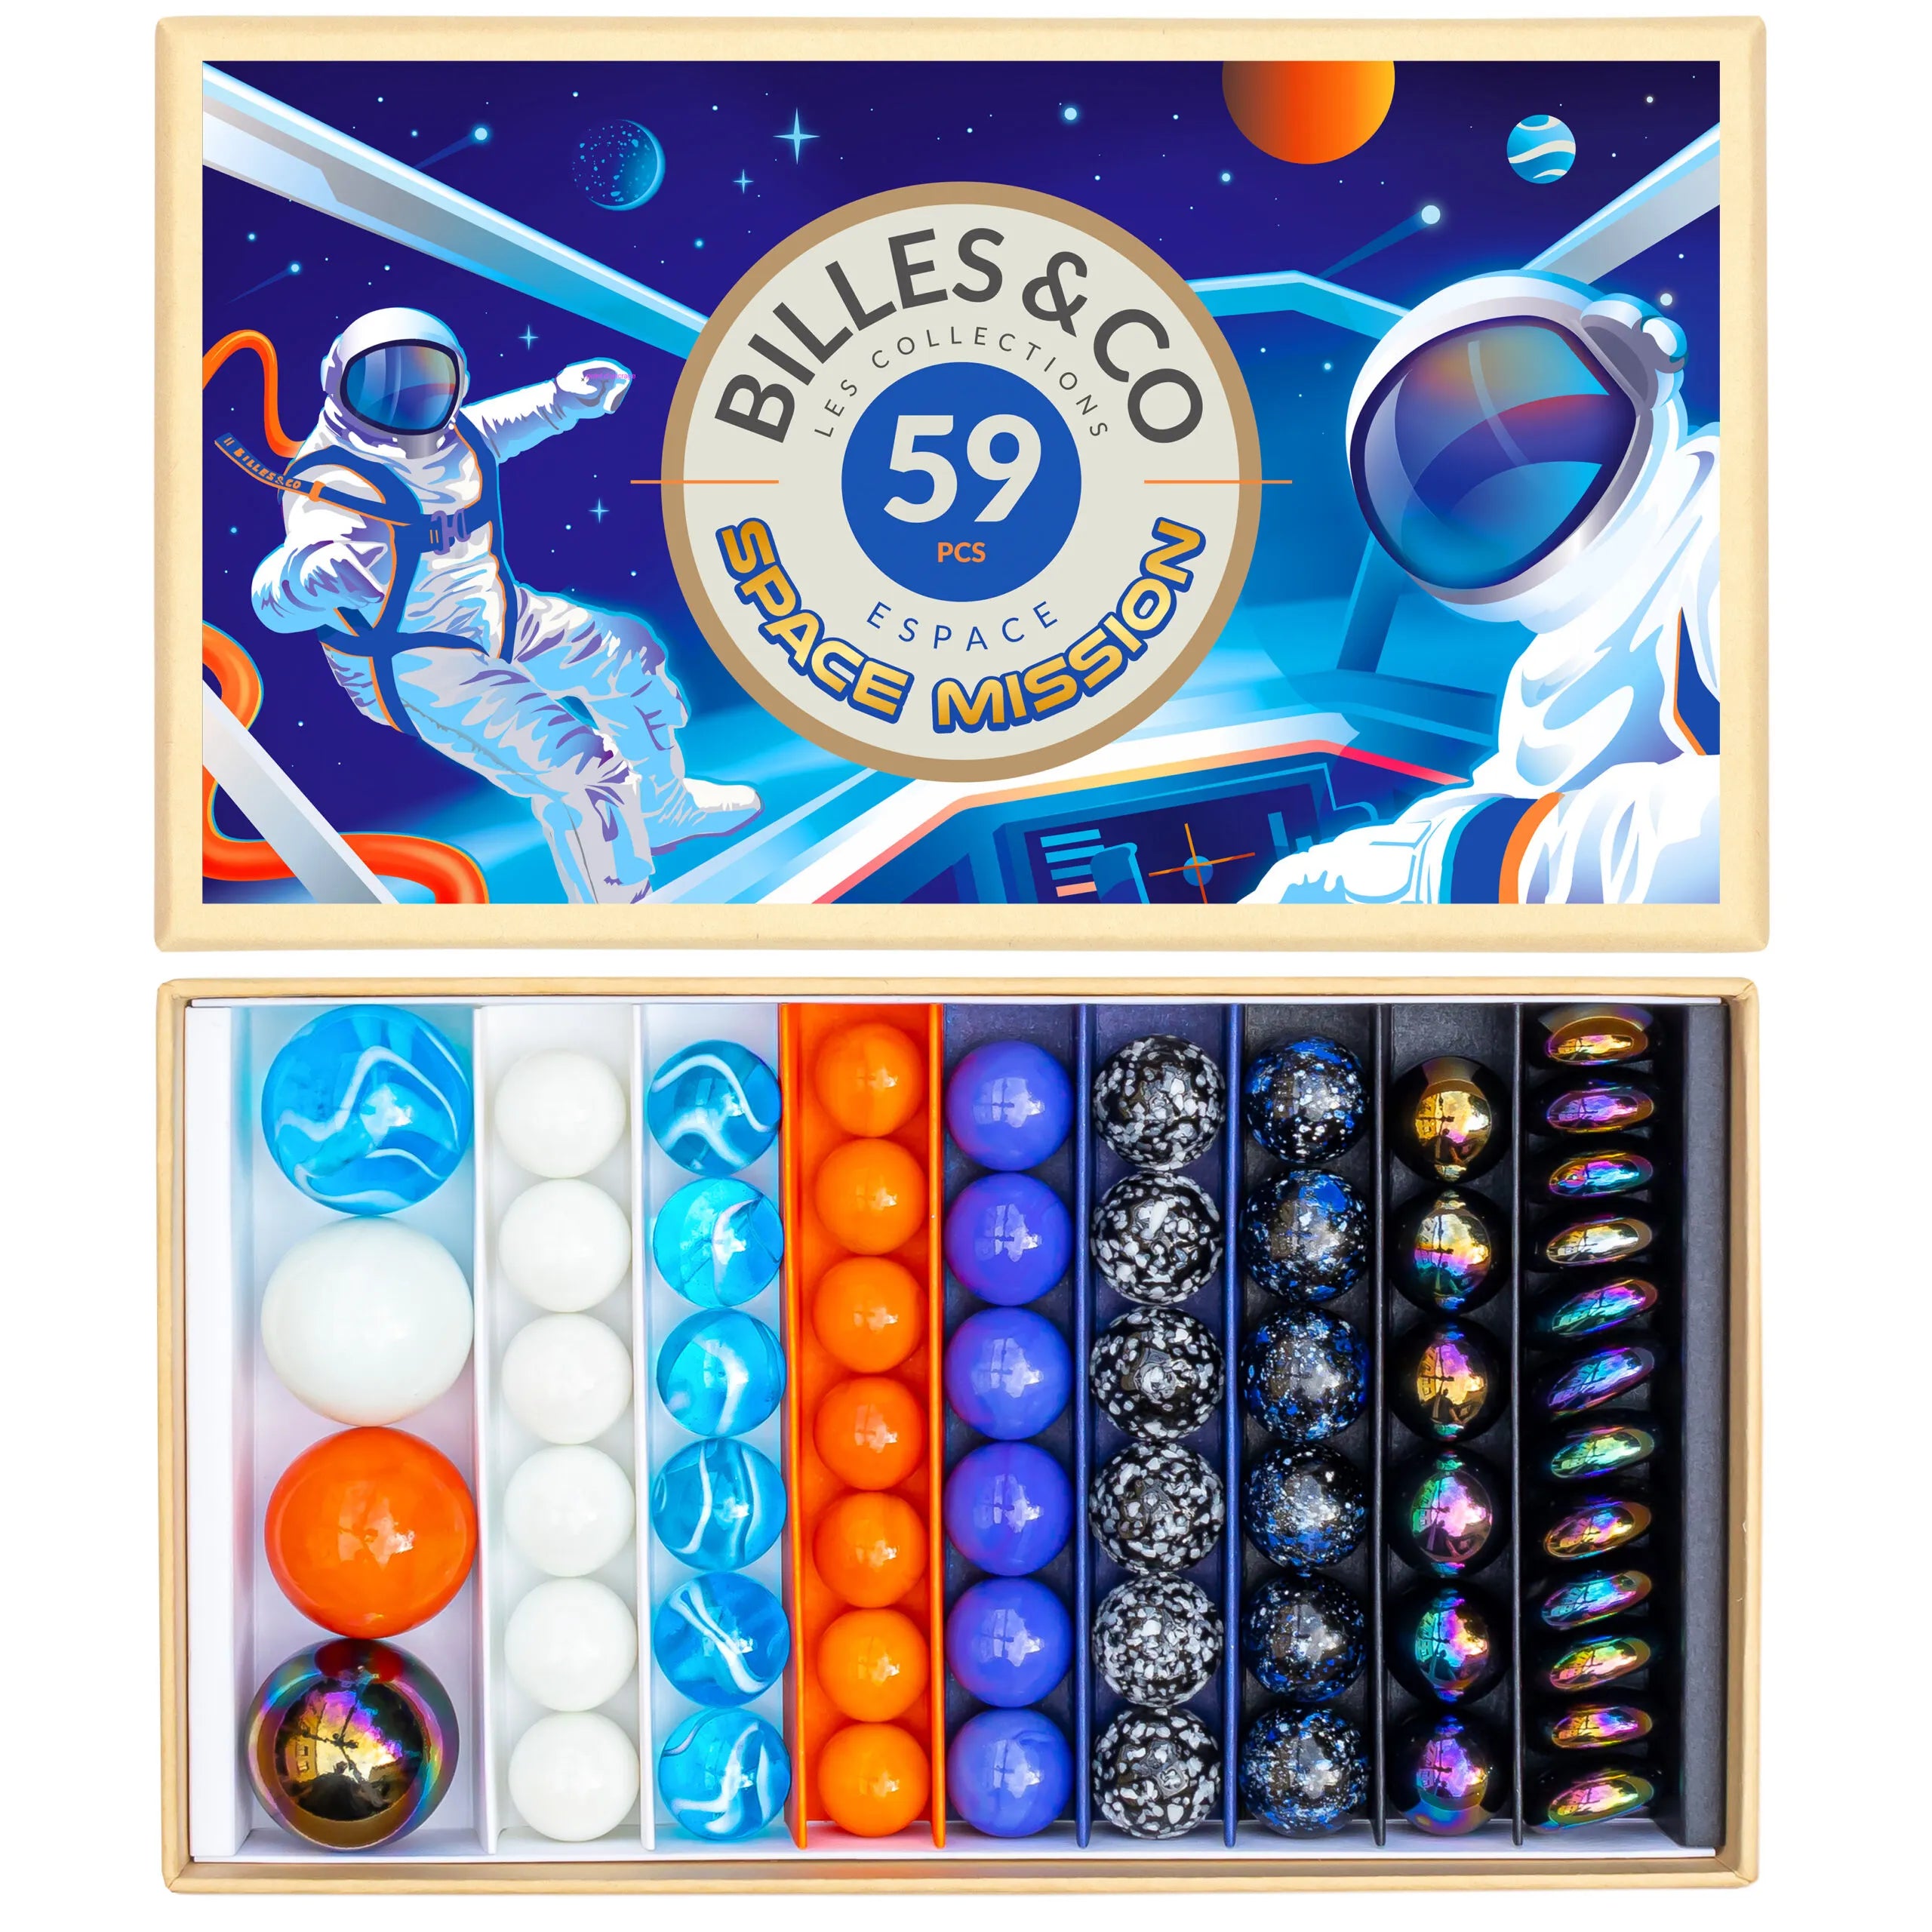 Billes & Co Space Mission Marbles – 59 Piece Set